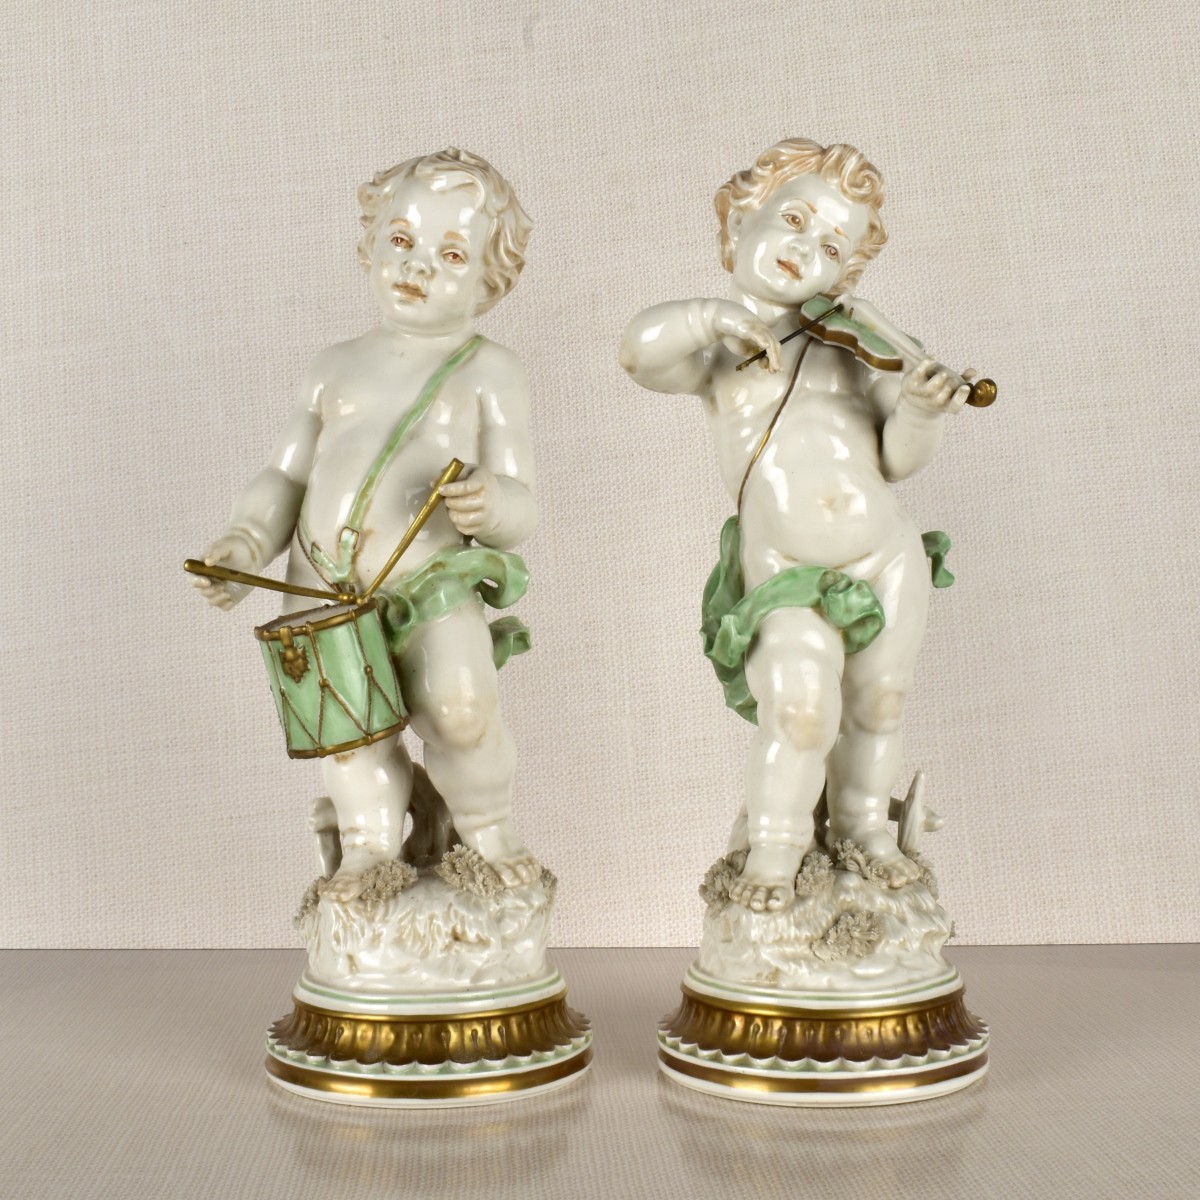 Allegorical Porcelain Figures